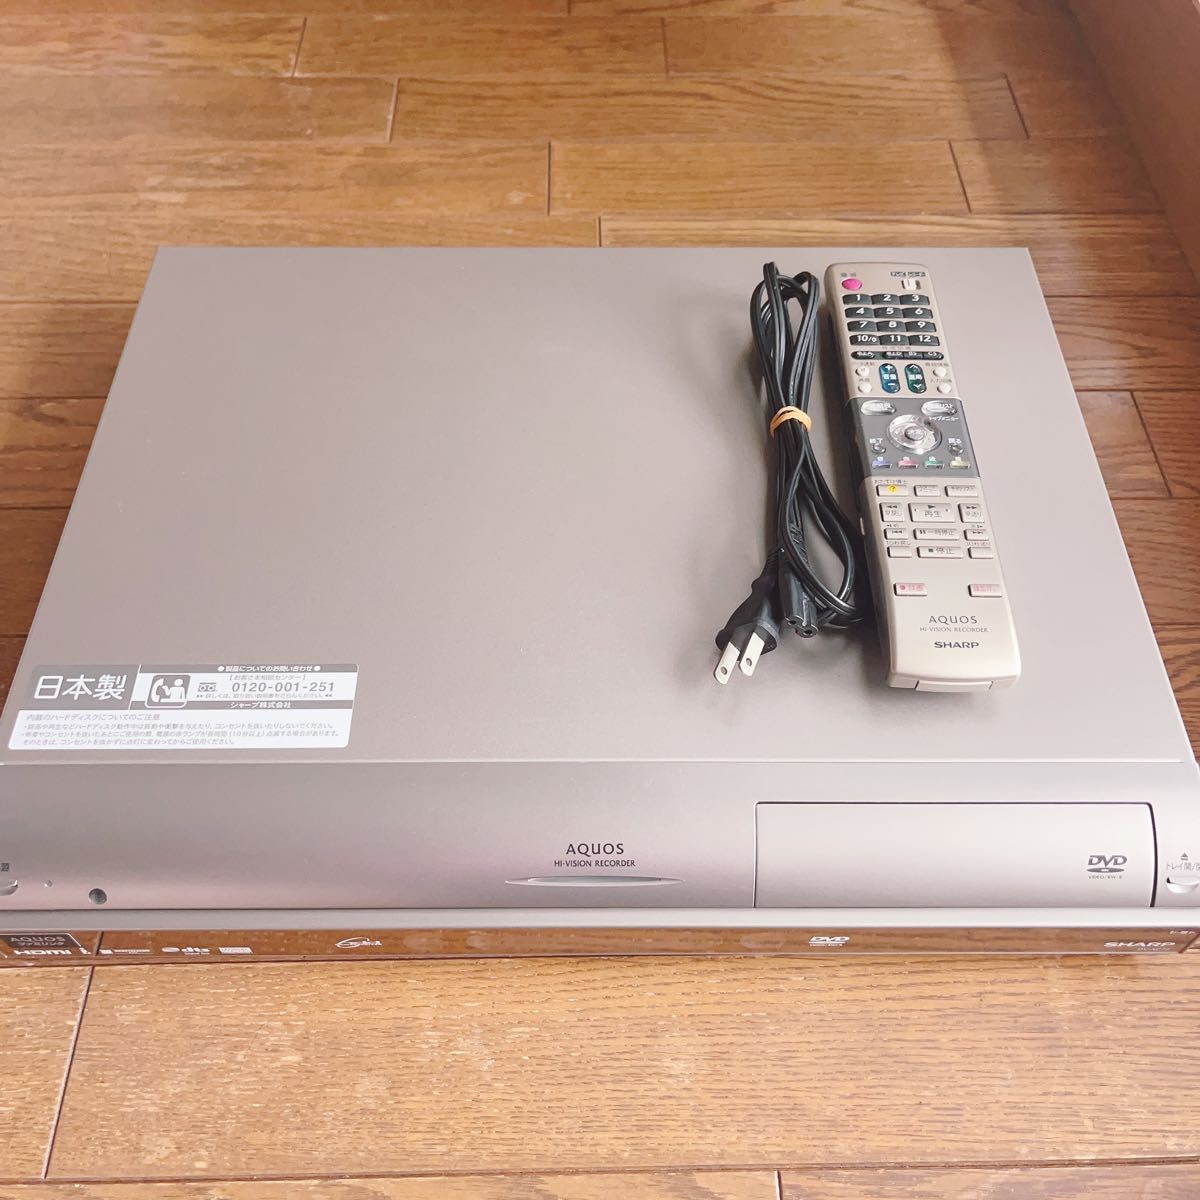 シャープ AQUOS ハイビジョンレコーダー DV-AC72 録画 ビデオ リモコン 電化製品